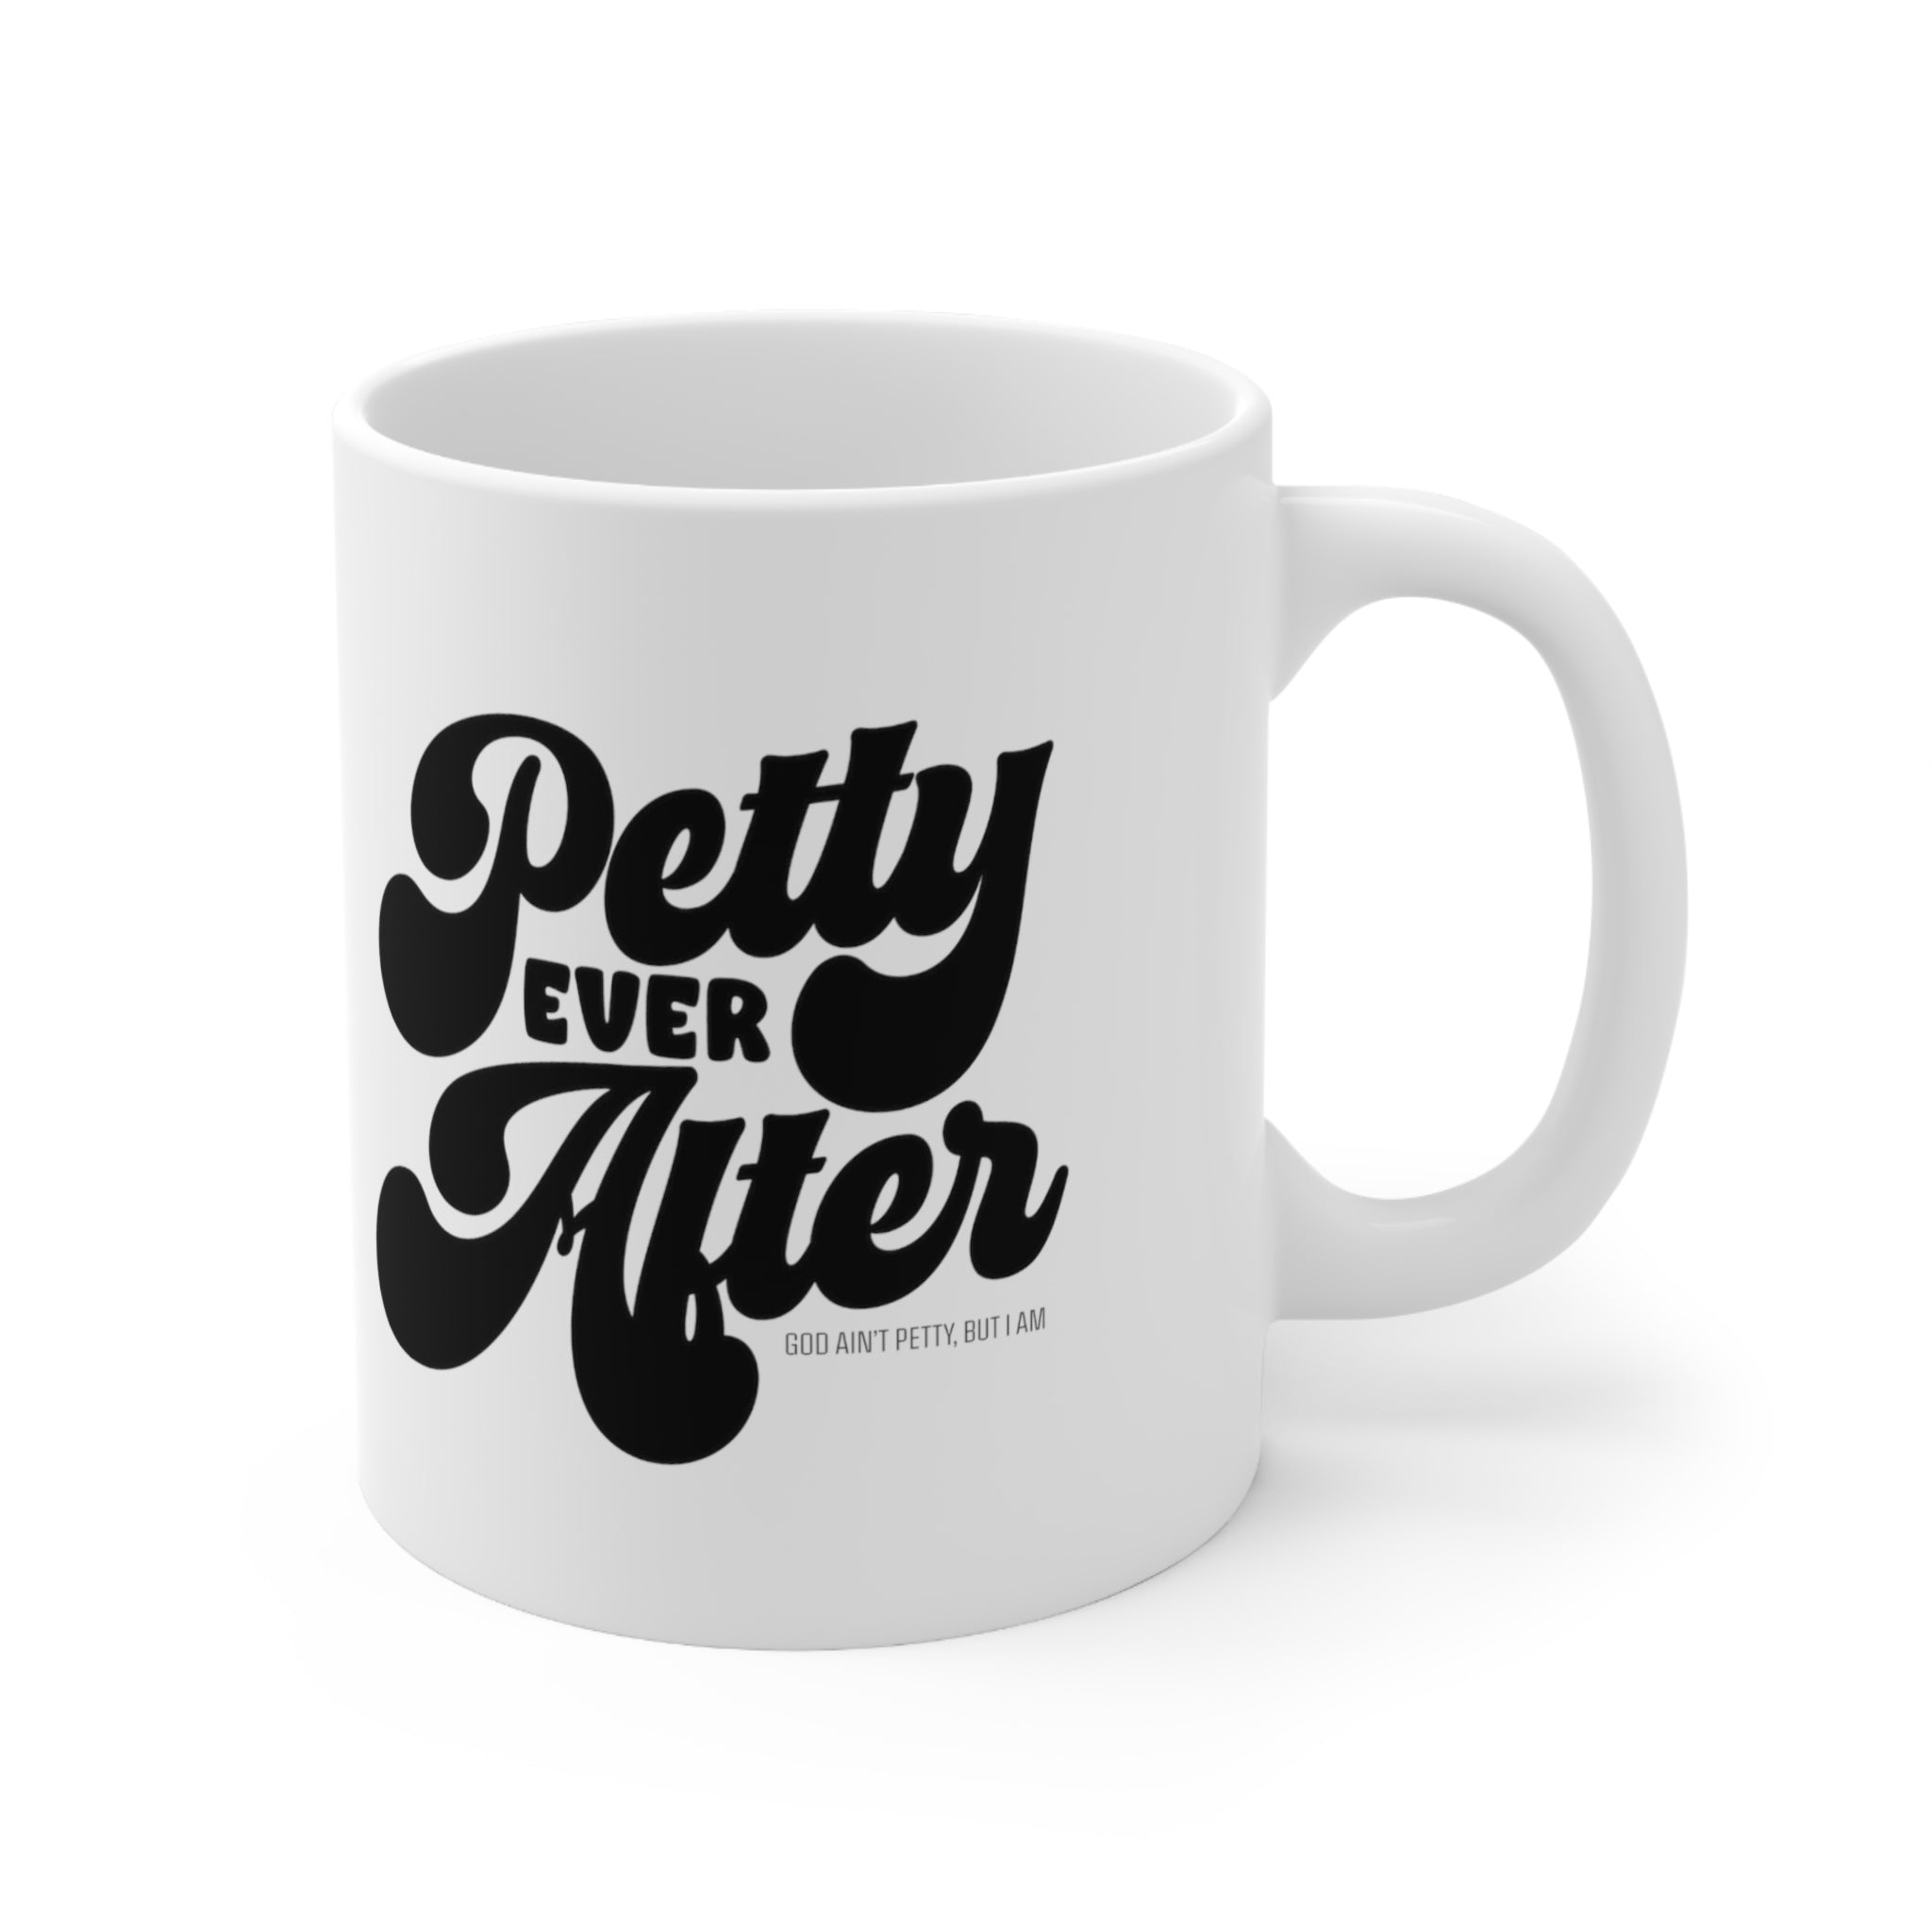 Petty Ever After Mug 11oz (White/Black)-Mug-The Original God Ain't Petty But I Am